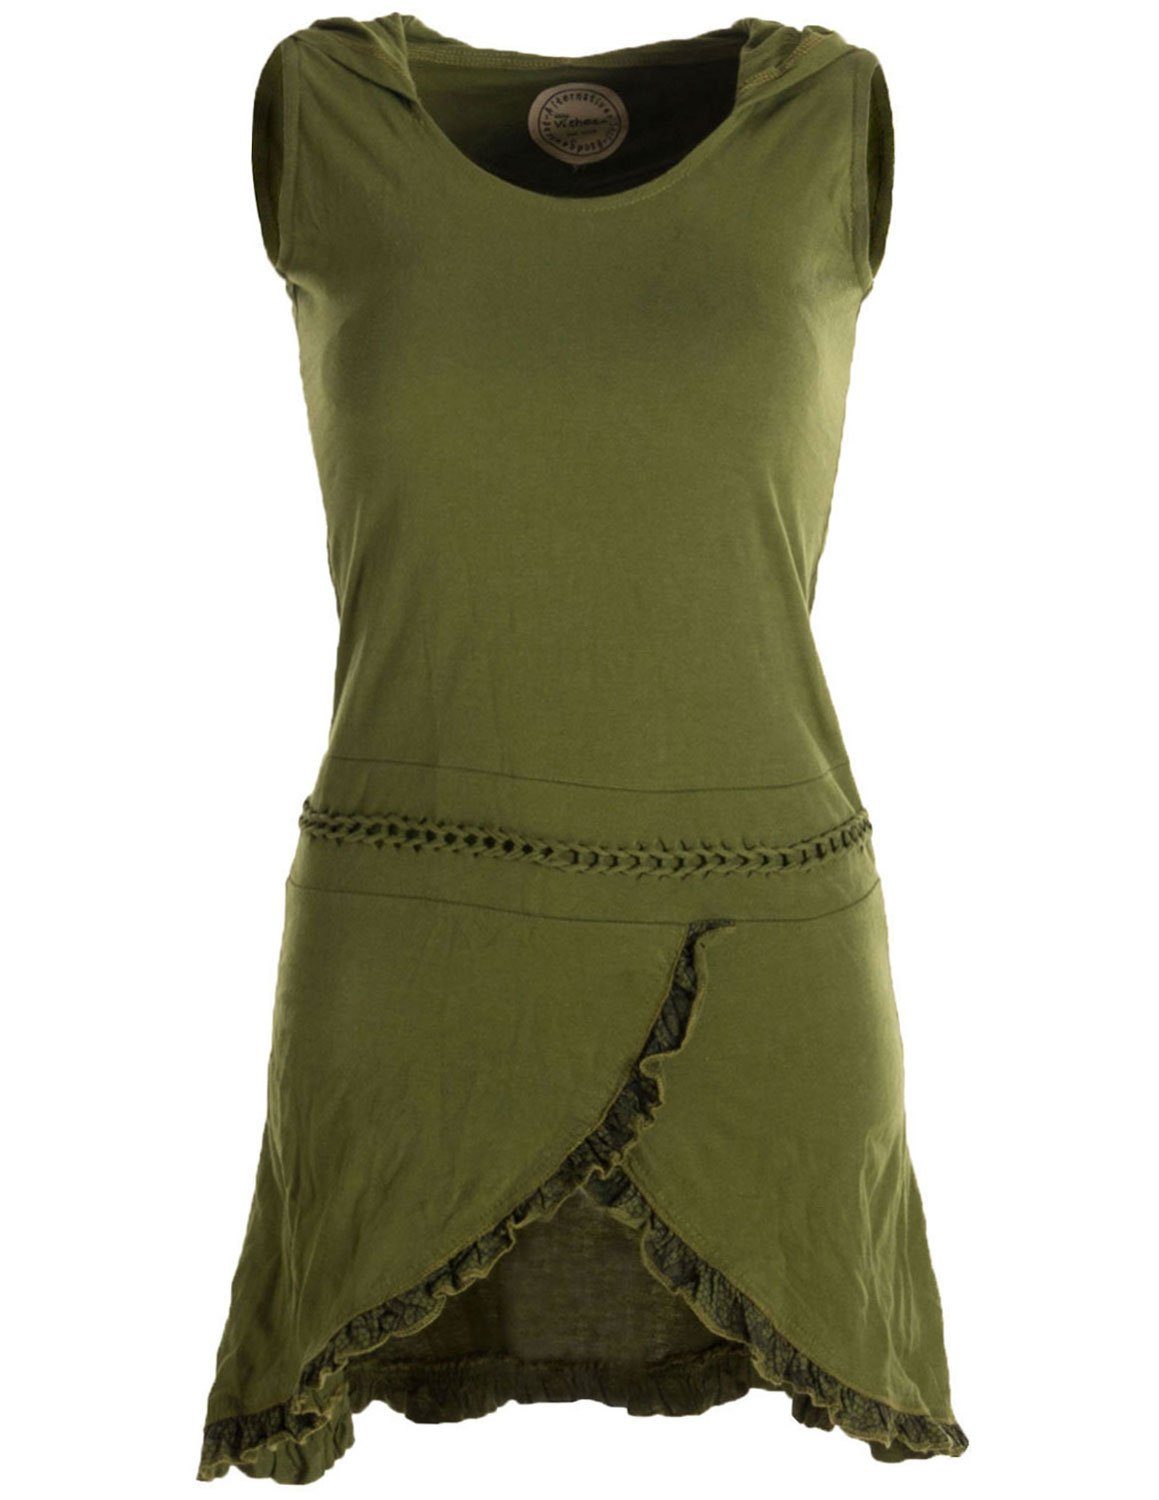 Vishes Zipfelkleid Asymmetrisches Lagenlook Baumwollkleid mit Rüschen, Flechtwerk und Zipfelkapuze olivegrün